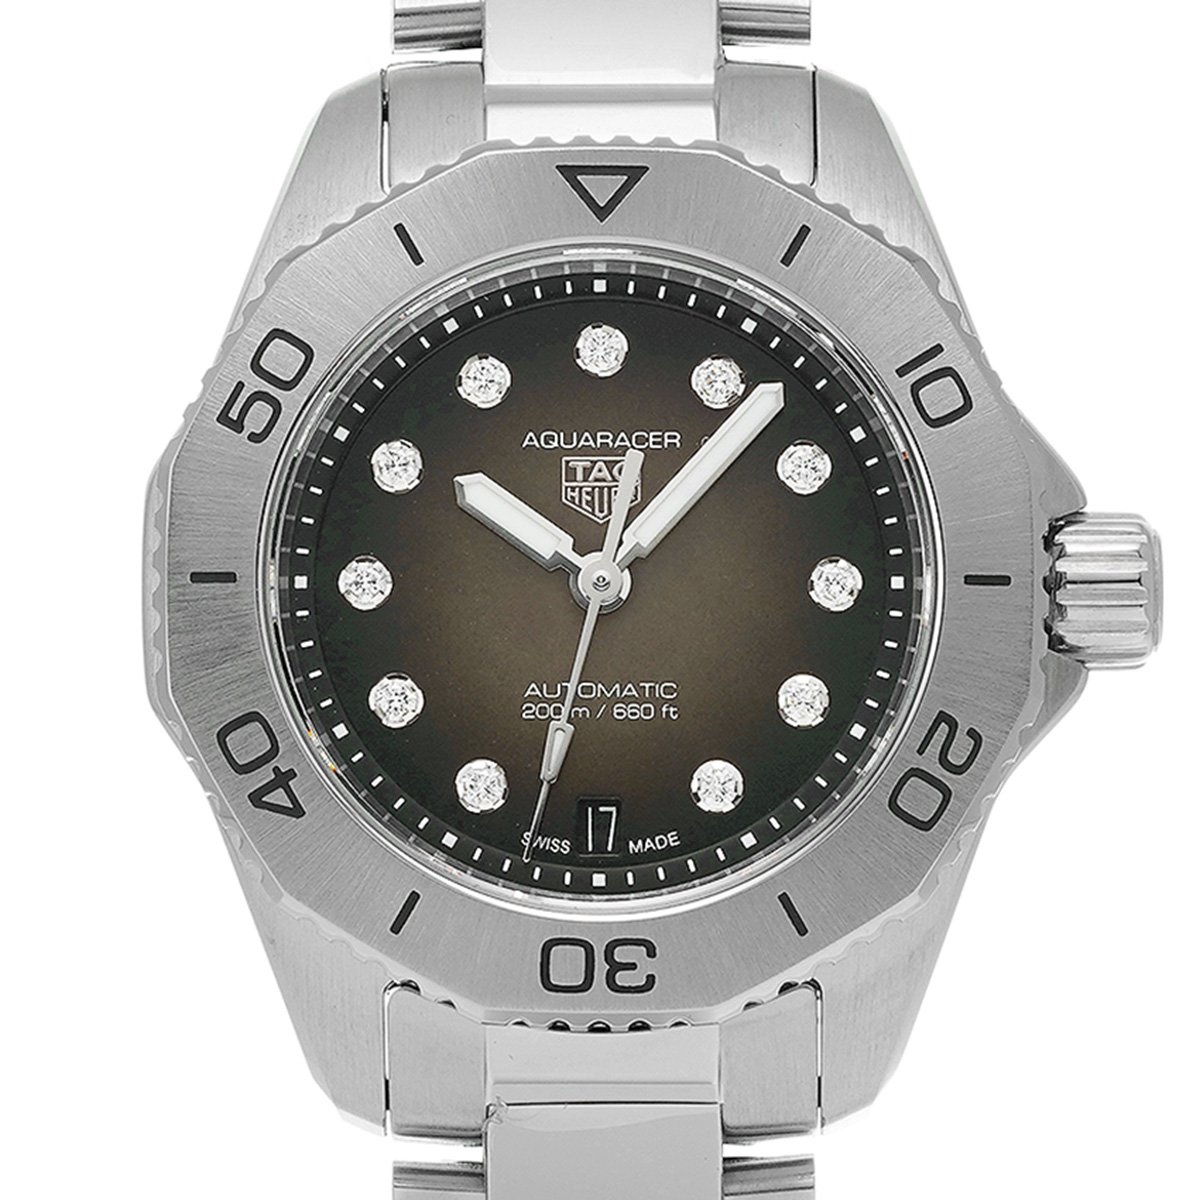 タグ ホイヤー TAG HEUER WBP2410.BA0622 ブラック メンズ 腕時計